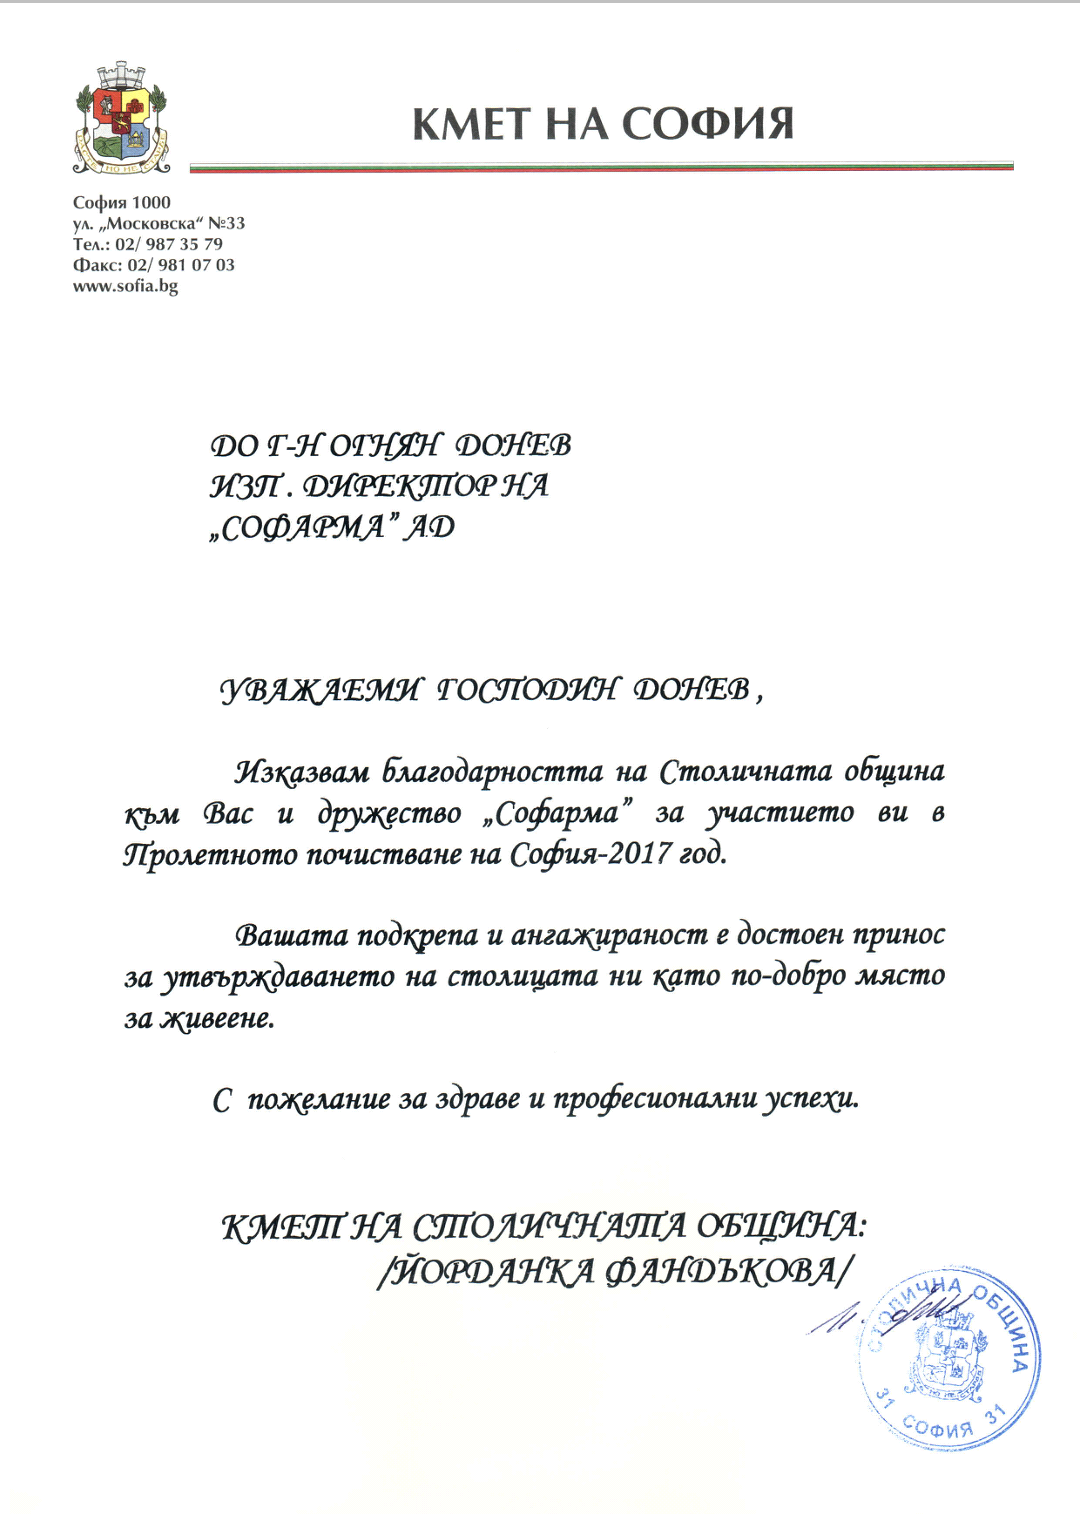 Благодарствено писмо към Софарма АД от г-жа Фандъкова, кмет на София